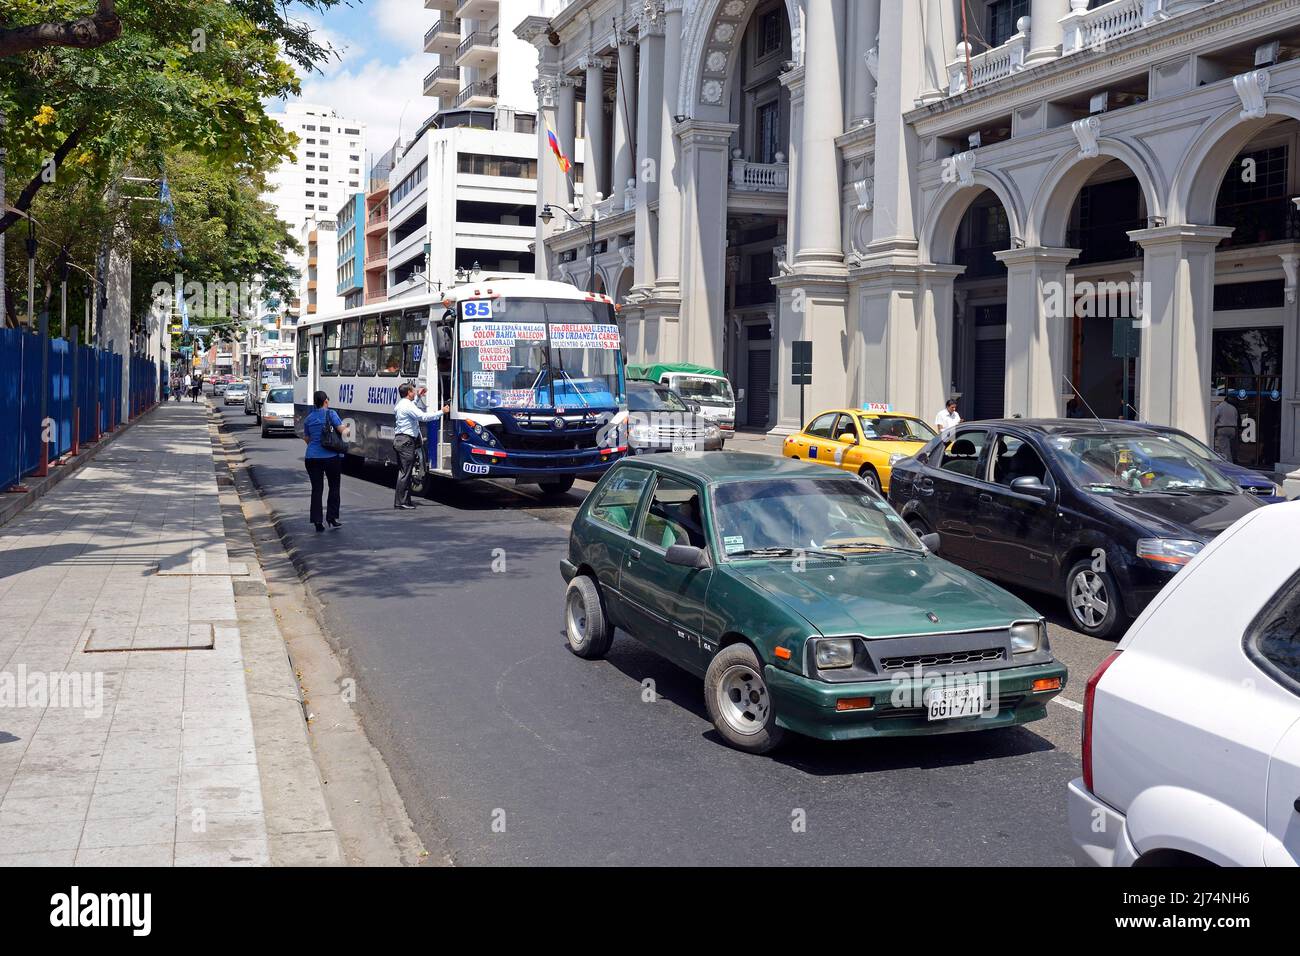 Típico caos de tráfico en el casco antiguo, Ecuador, Guayaquil Foto de stock